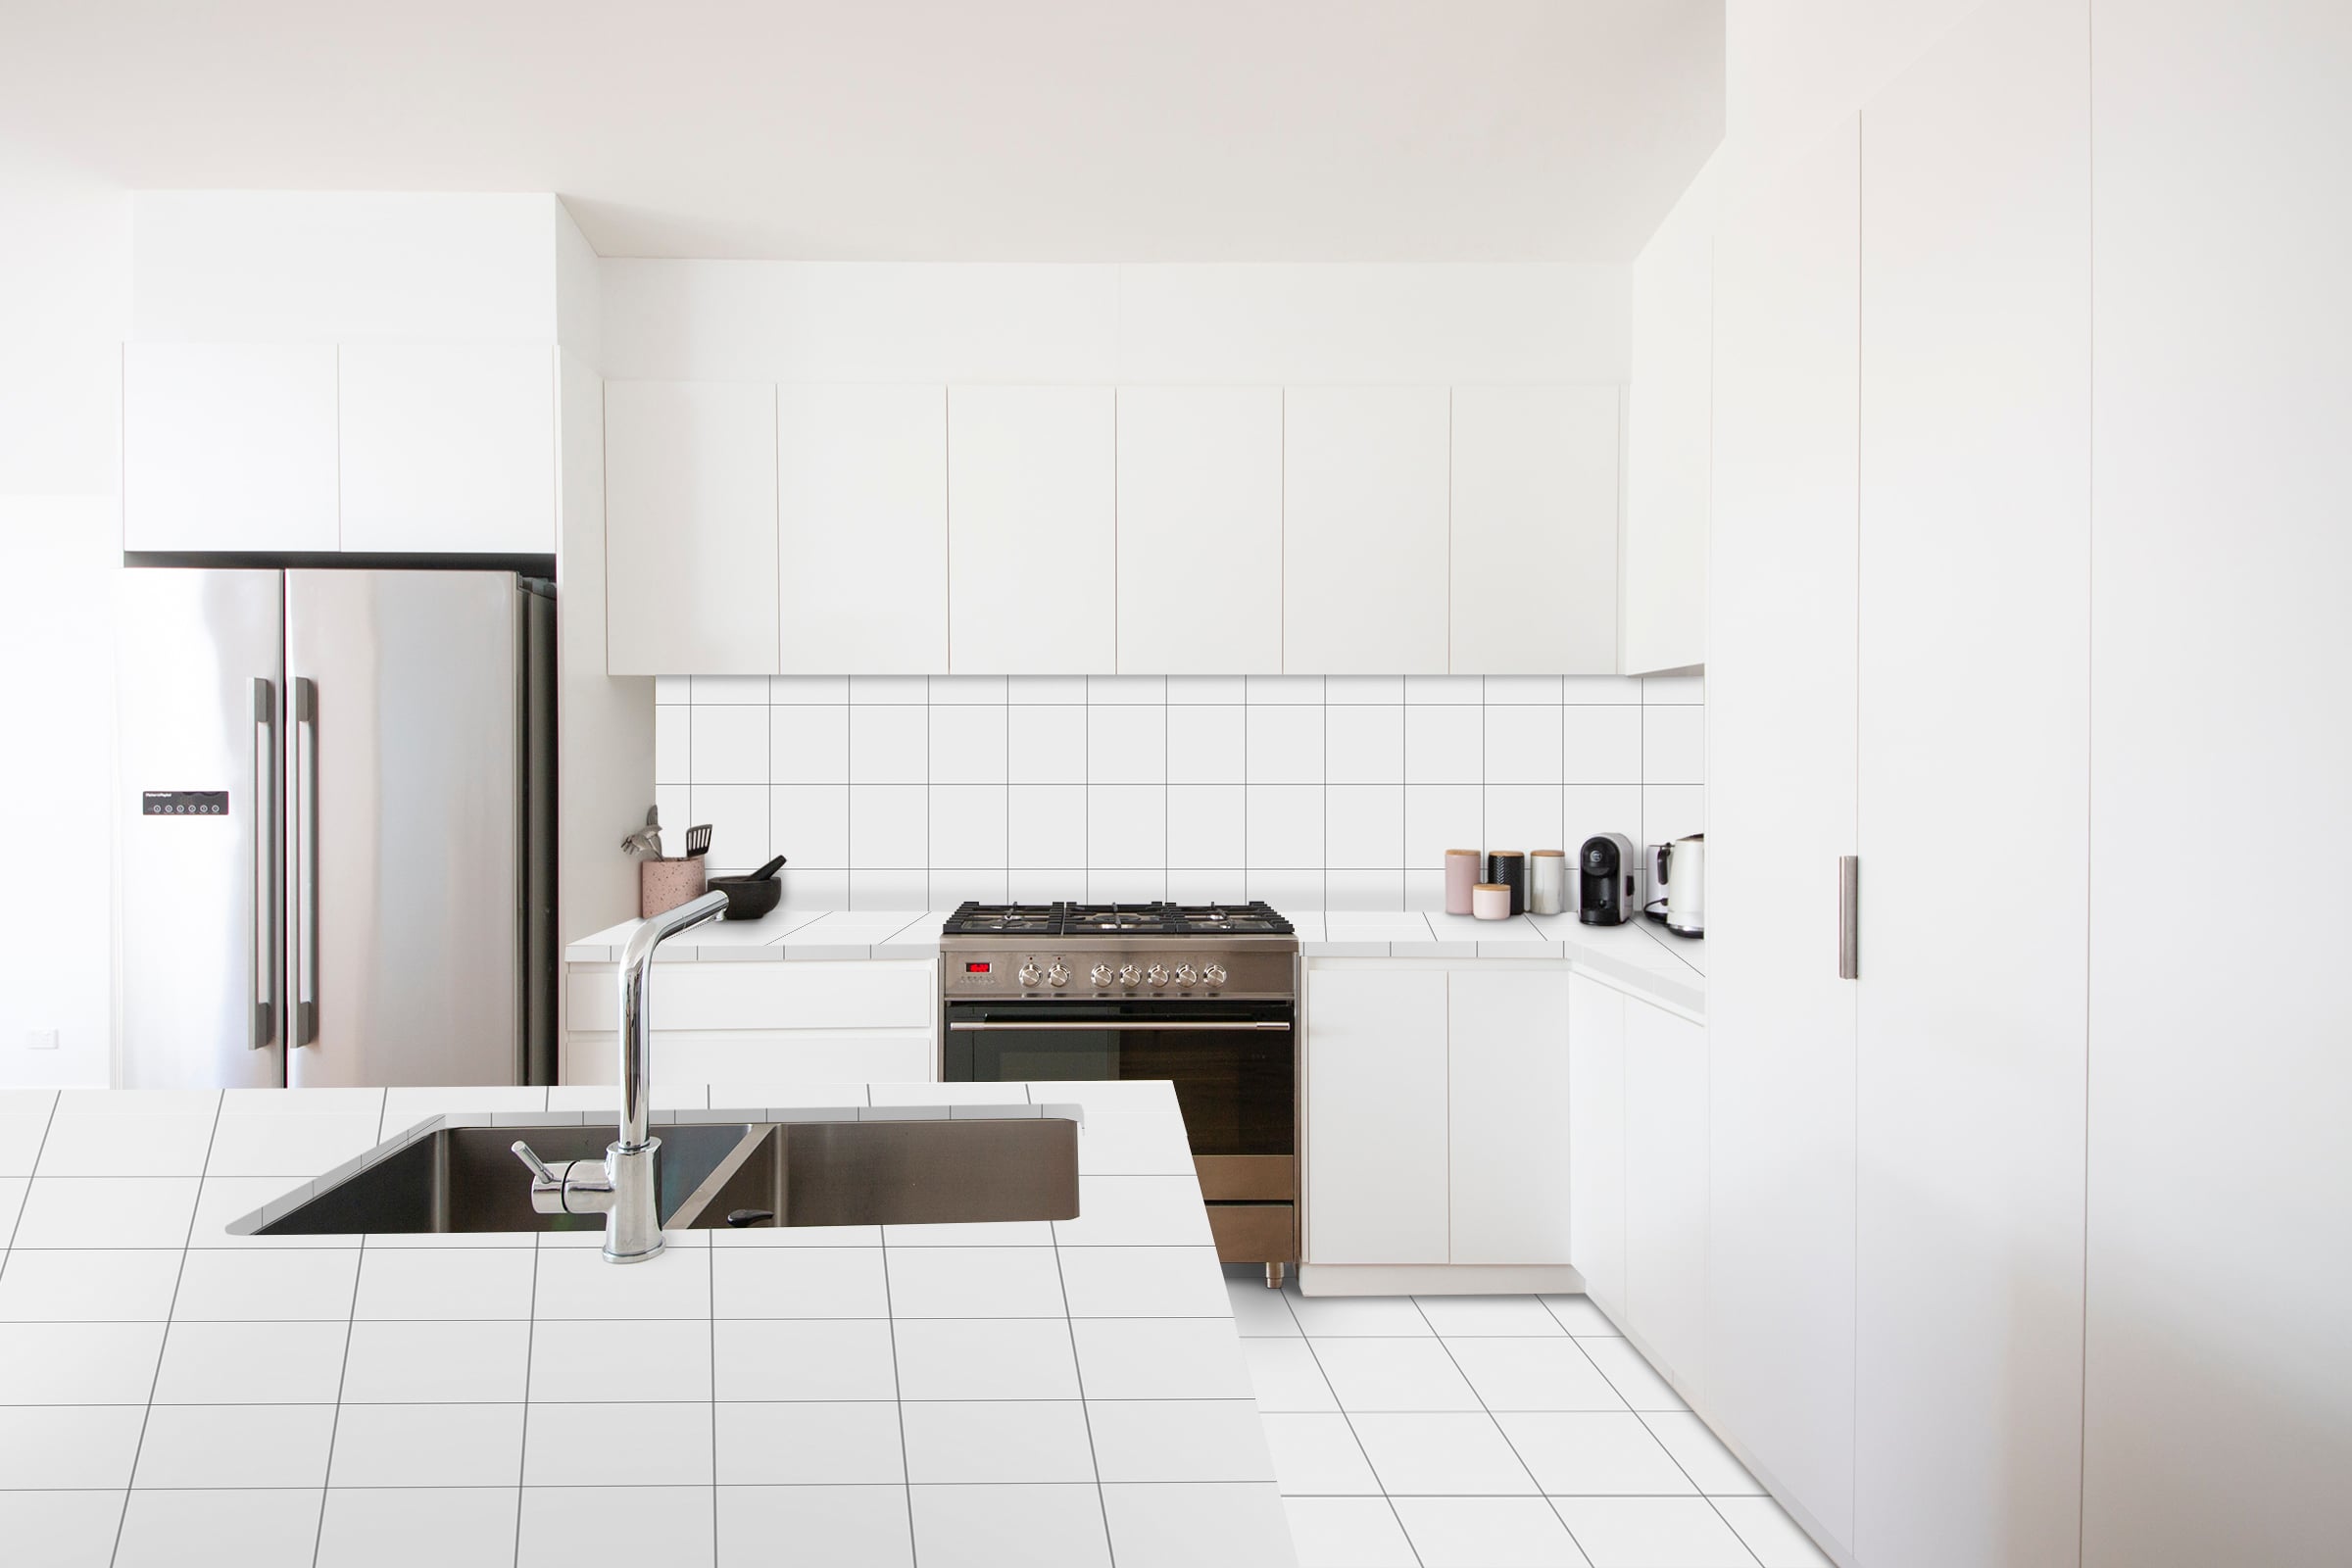 Realizza un prototipo realistico della tua cucina ricoperto dalle lastre in gres Epic Surface: piano cottura, isola e pavimento